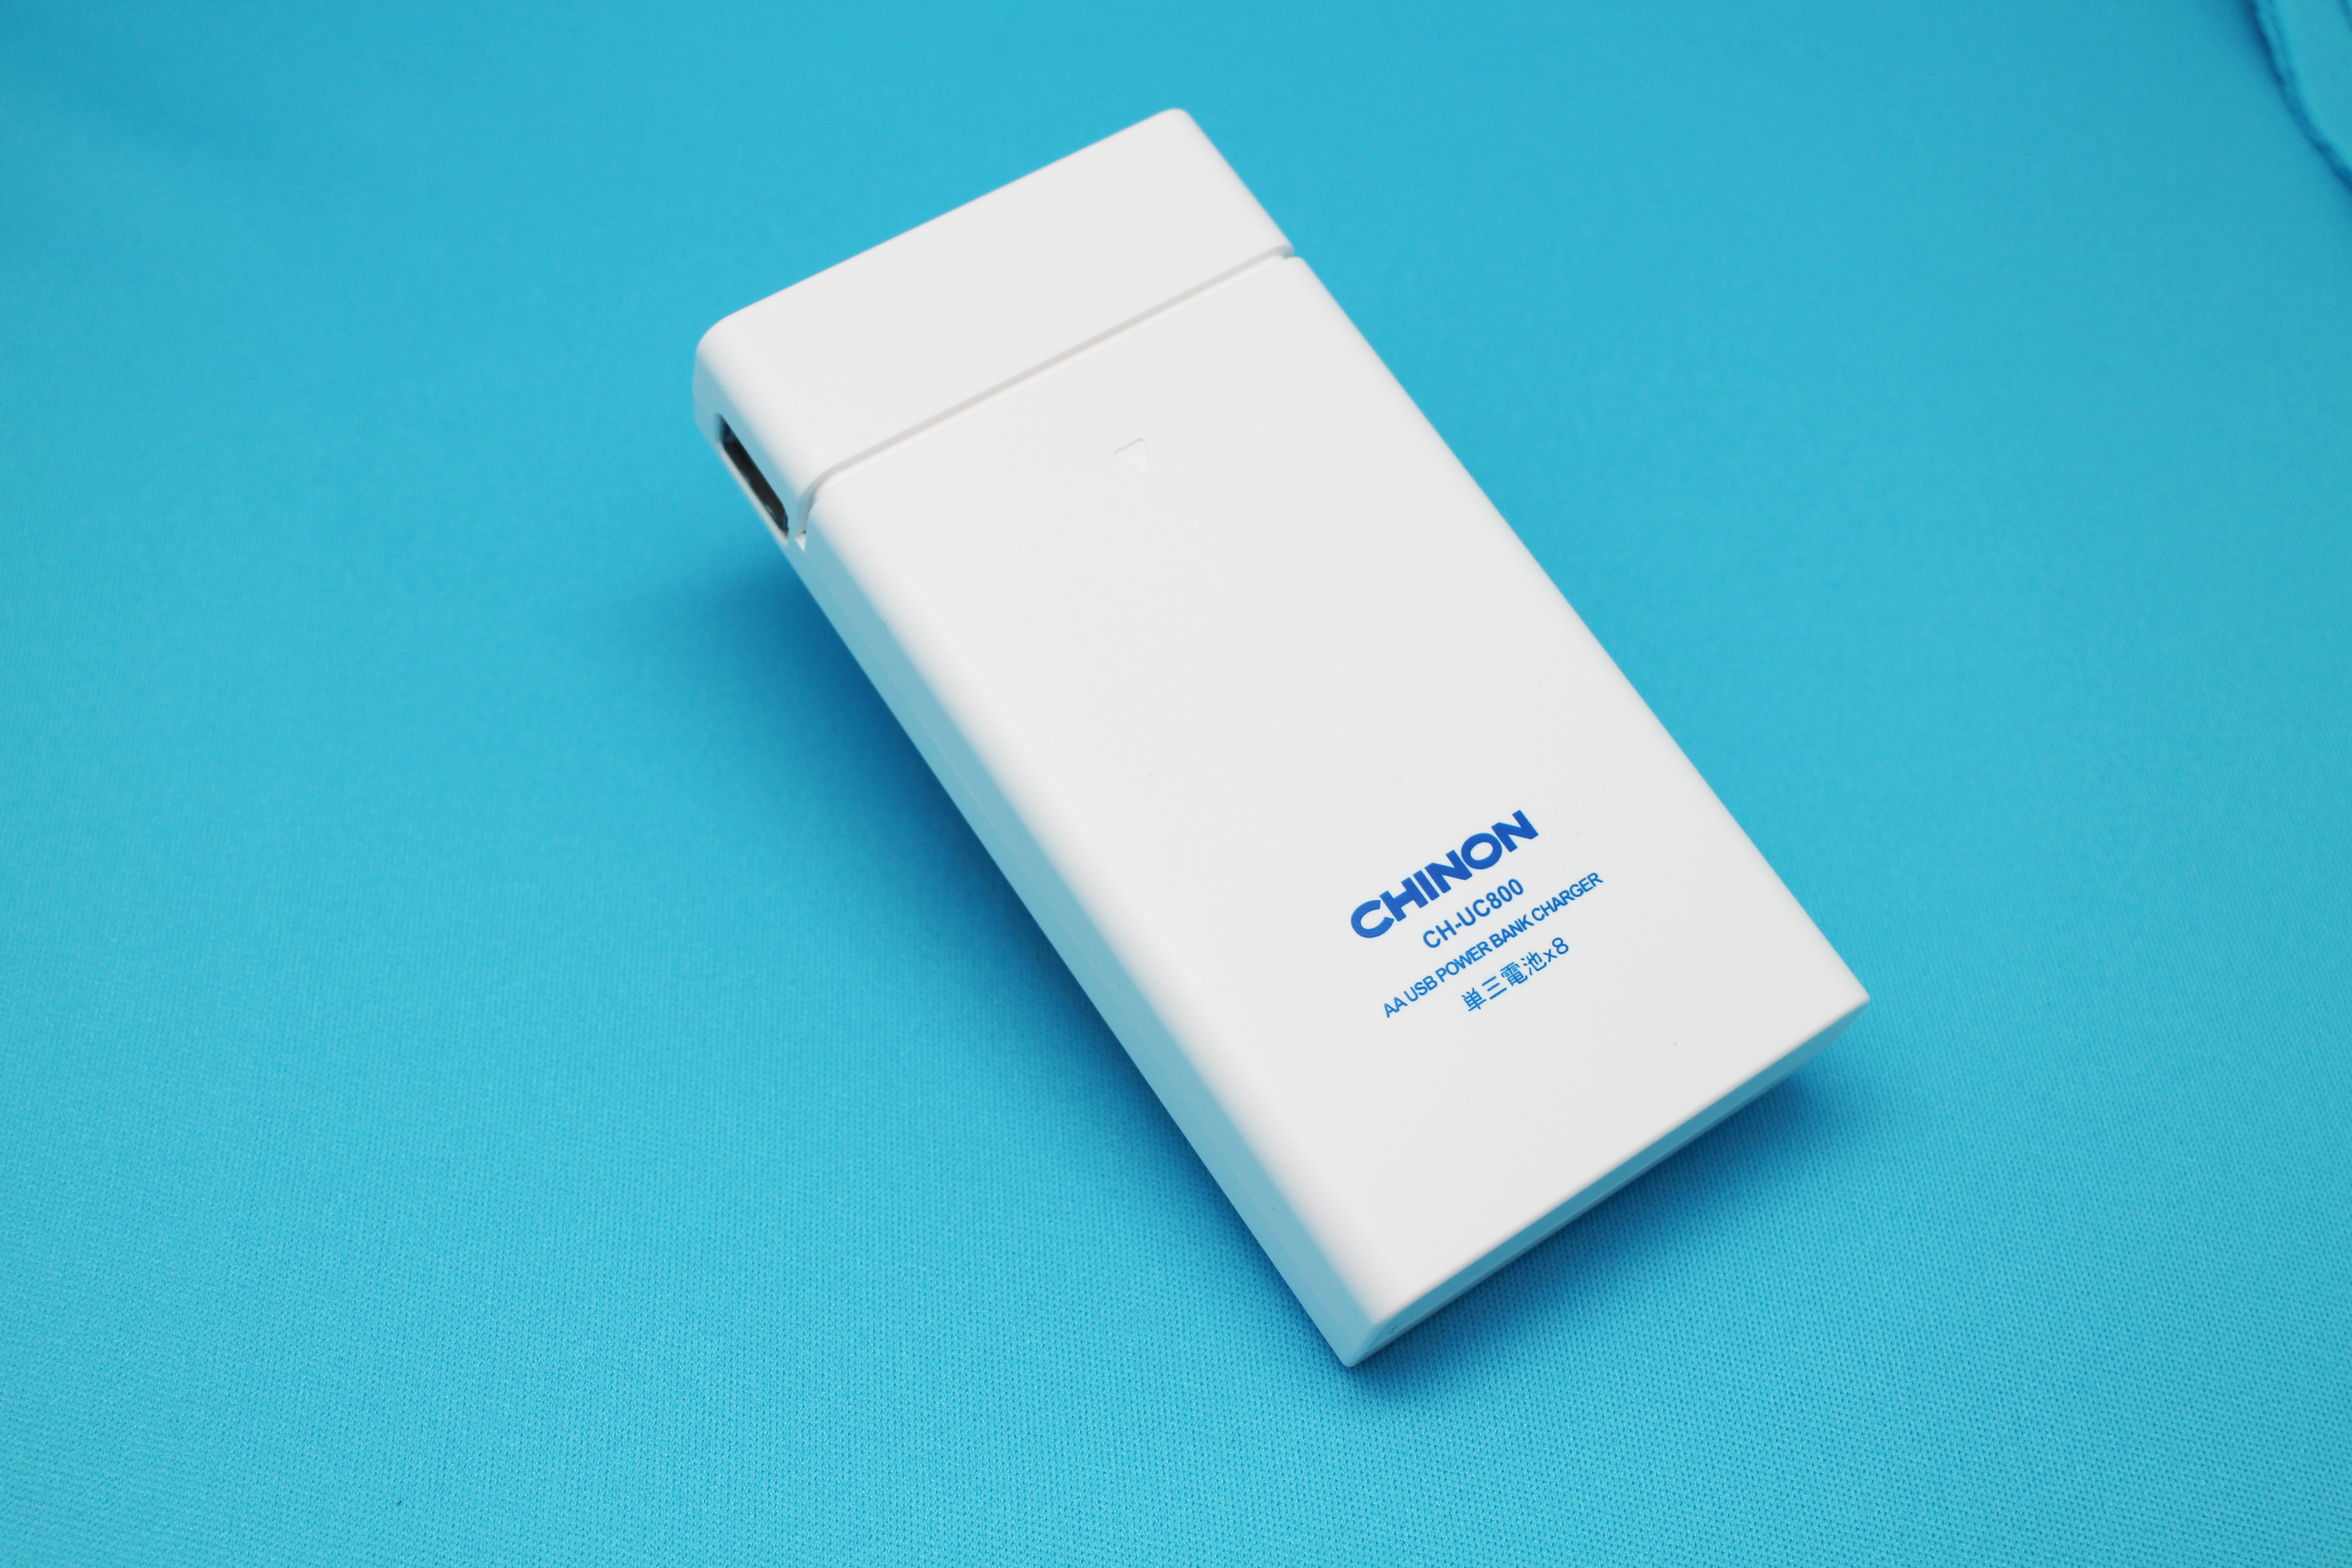 単三形電池8本でスマホが約2回充電できるモバイルバッテリー登場 飛行機への持込可能で、ニッケル水素電池にも対応｜株式会社チノンのプレスリリース